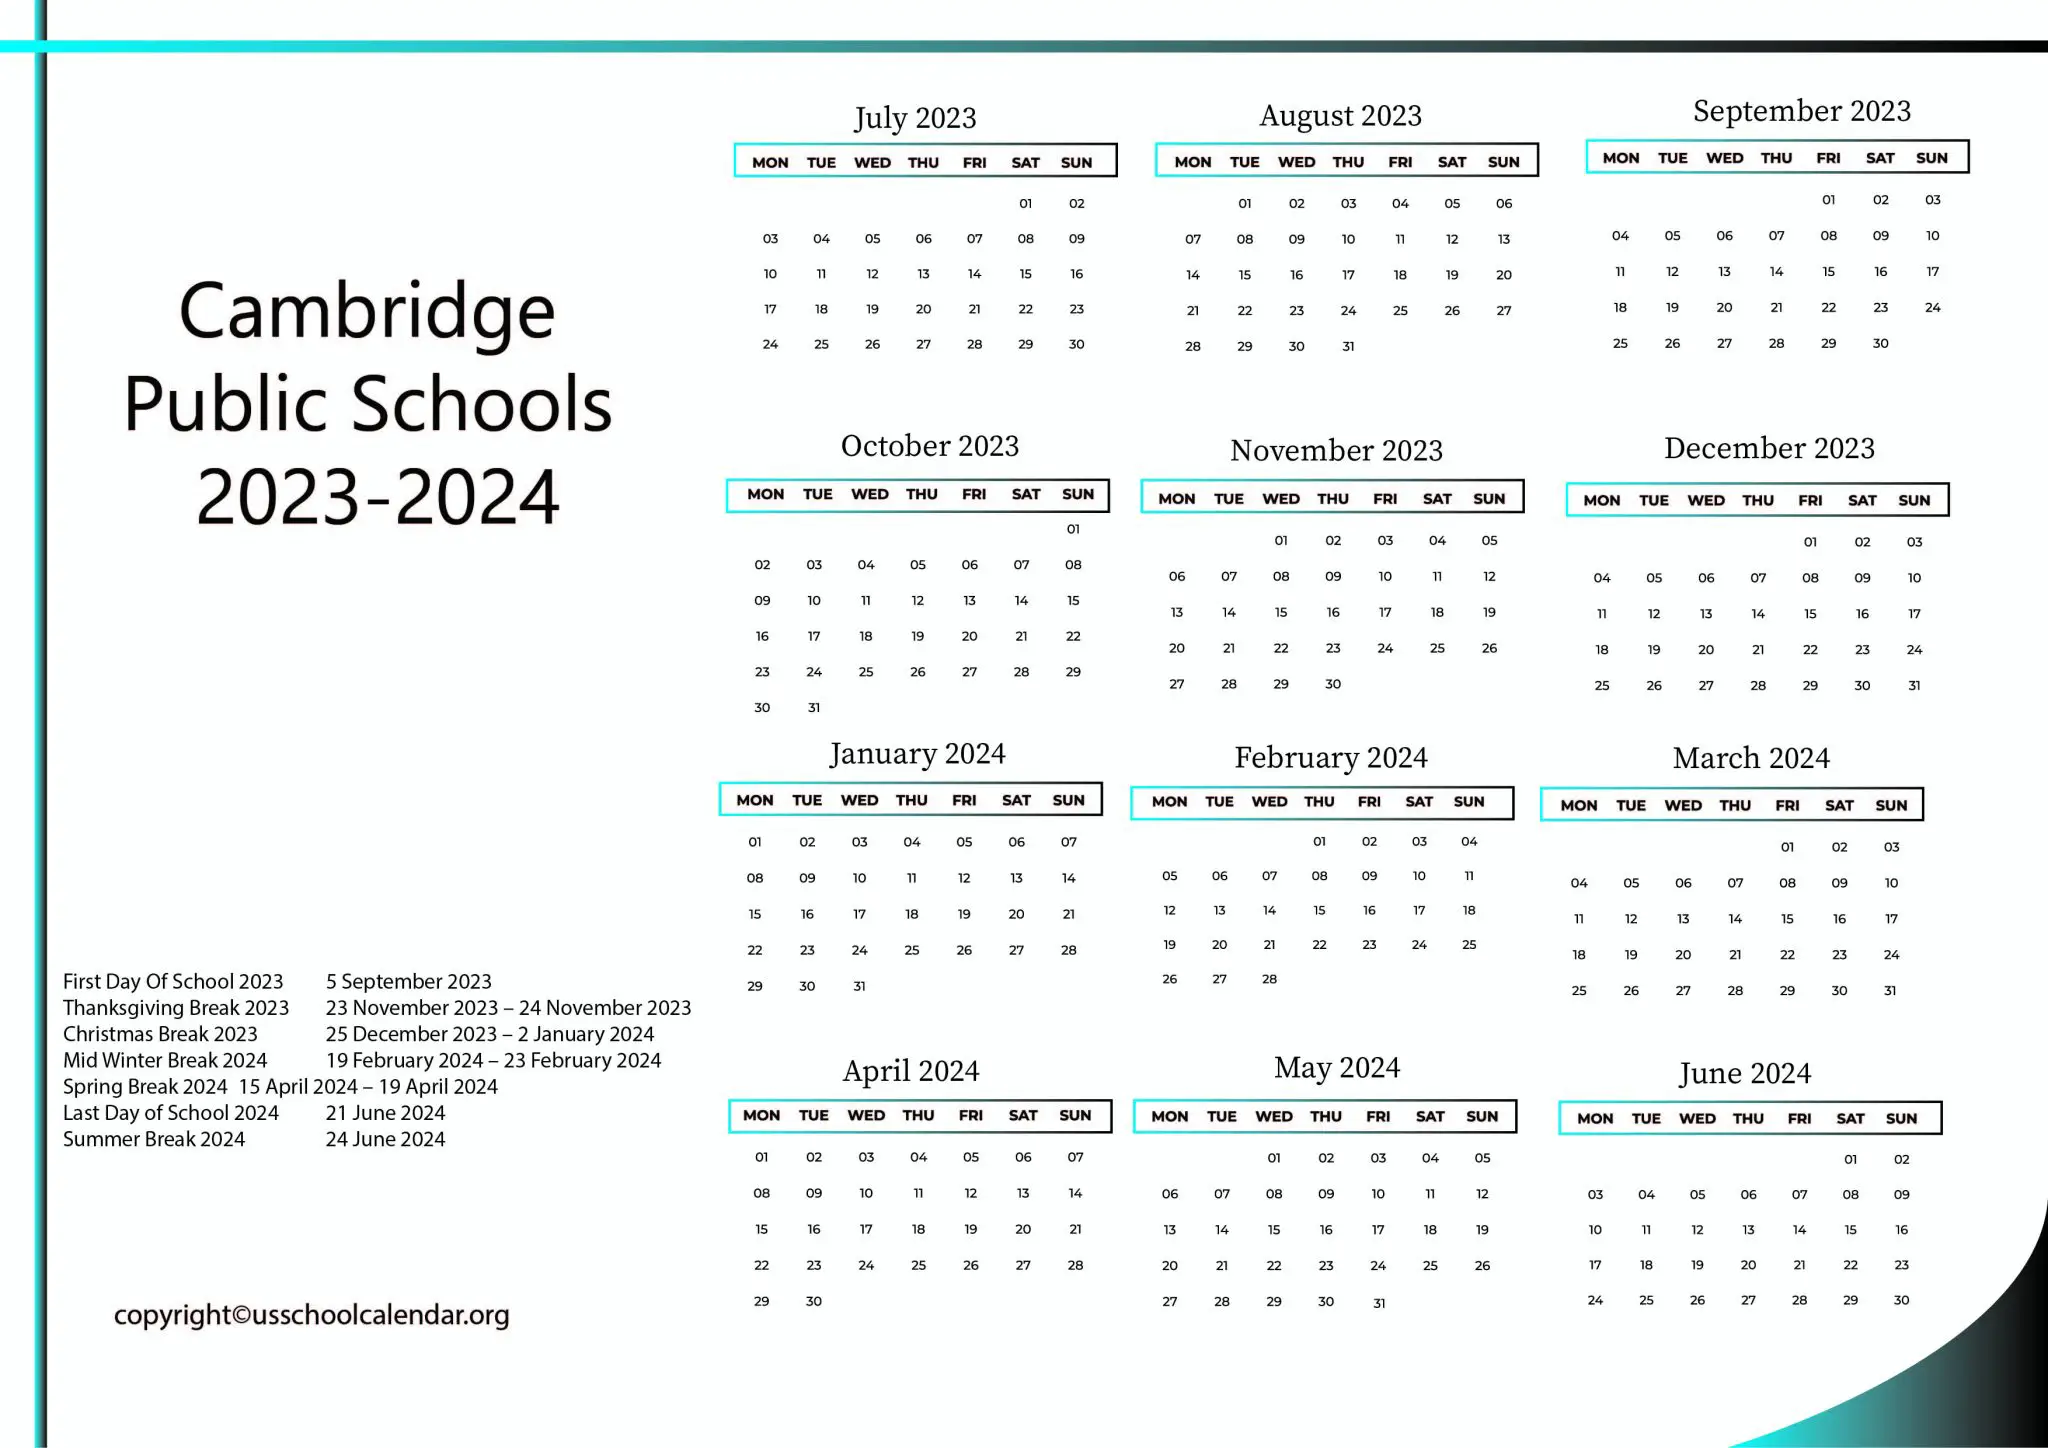 cambridge-public-schools-calendar-with-holidays-2023-2024